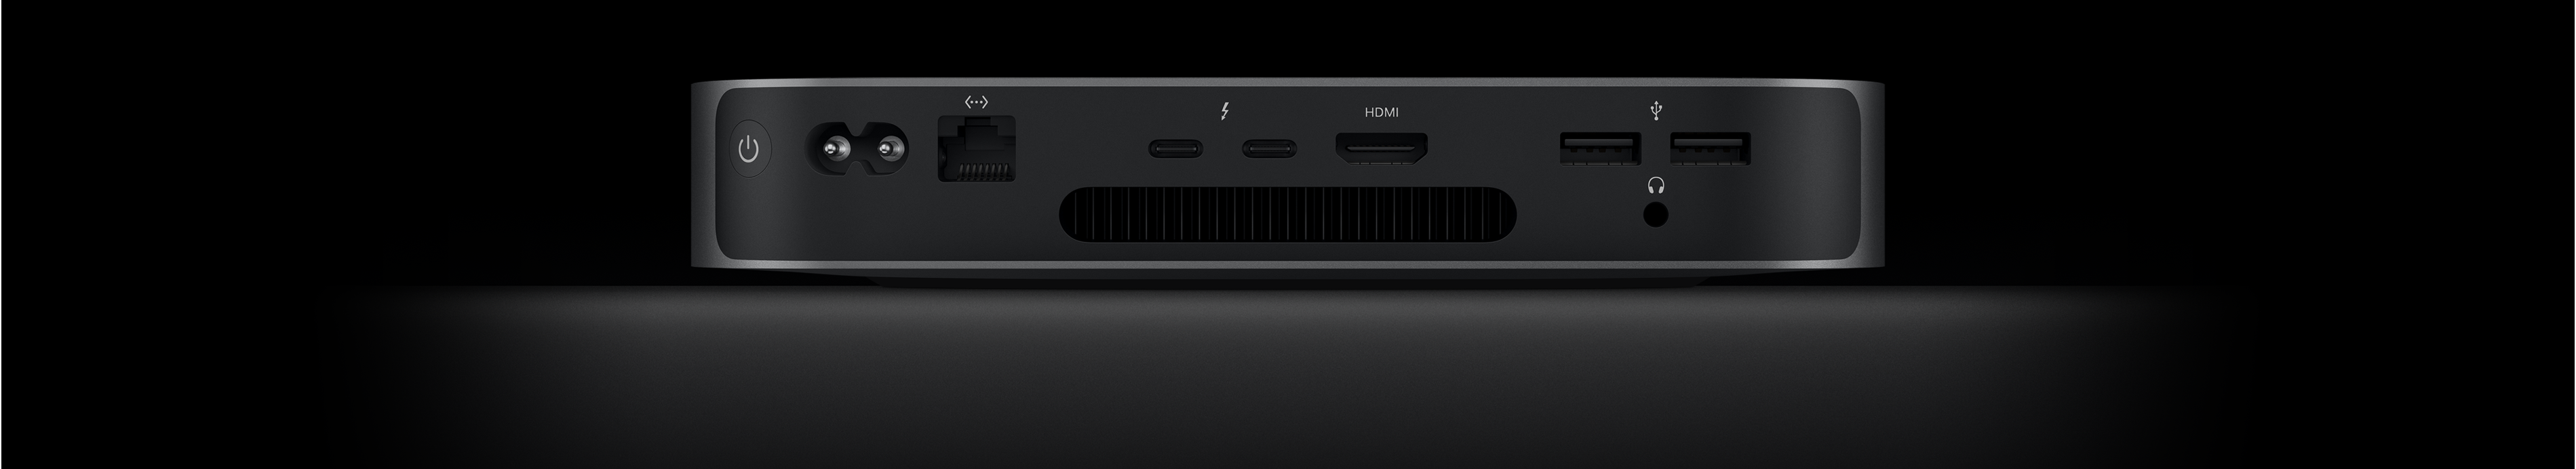 Vista posterior de una Mac mini que muestra dos puertos Thunderbolt 4, un puerto HDMI, dos puertos USB-A, una entrada para audífonos, un puerto Gigabit Ethernet, la entrada de alimentación y el botón de encendido.